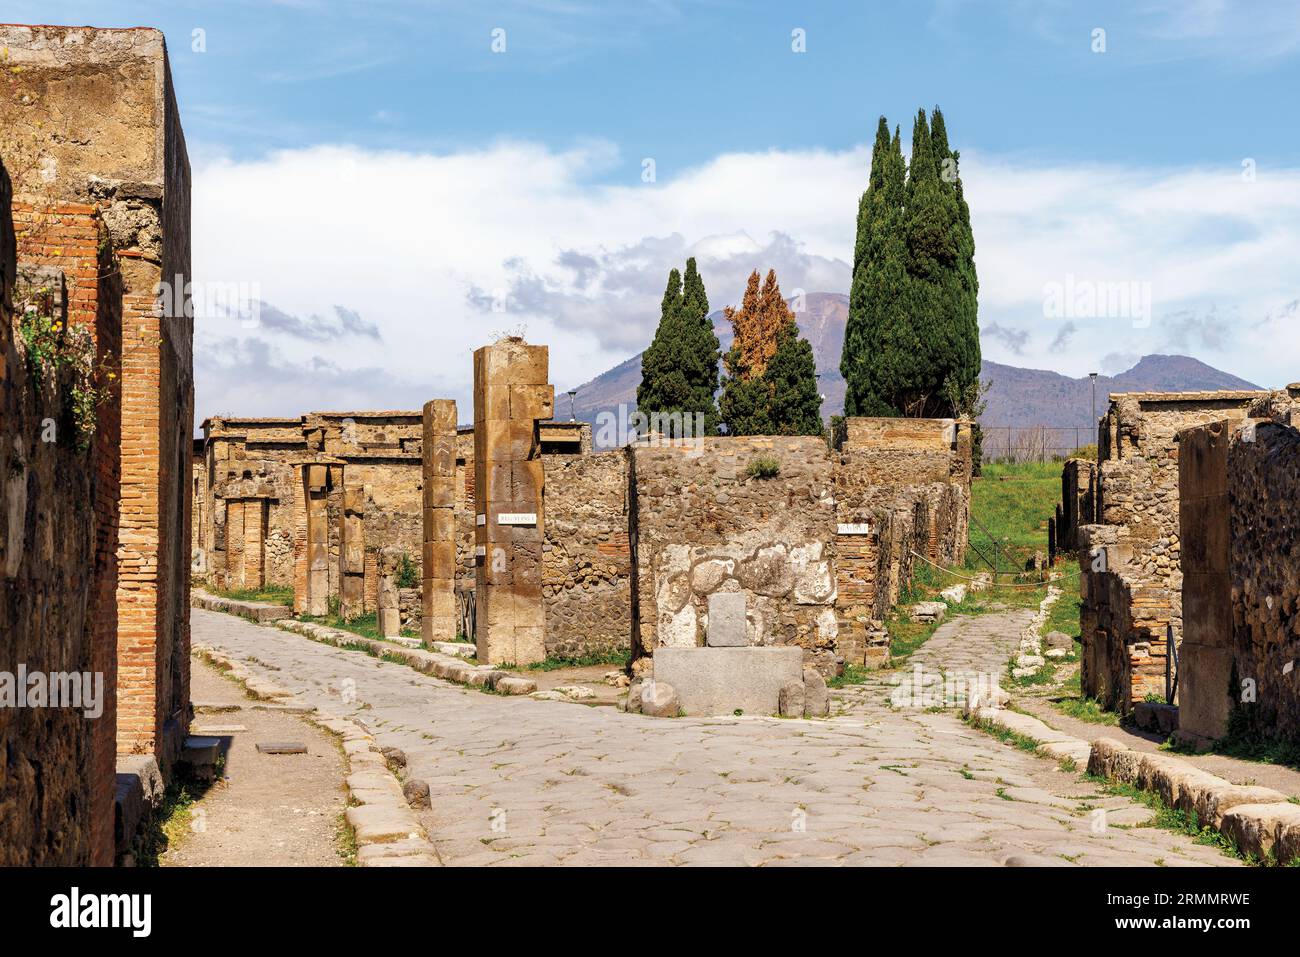 Sito archeologico di Pompei, Campania, Italia. Strade scavate. Monte Vesuvio sullo sfondo. Pompei, Ercolano e Torre Annunziata sono colle Foto Stock